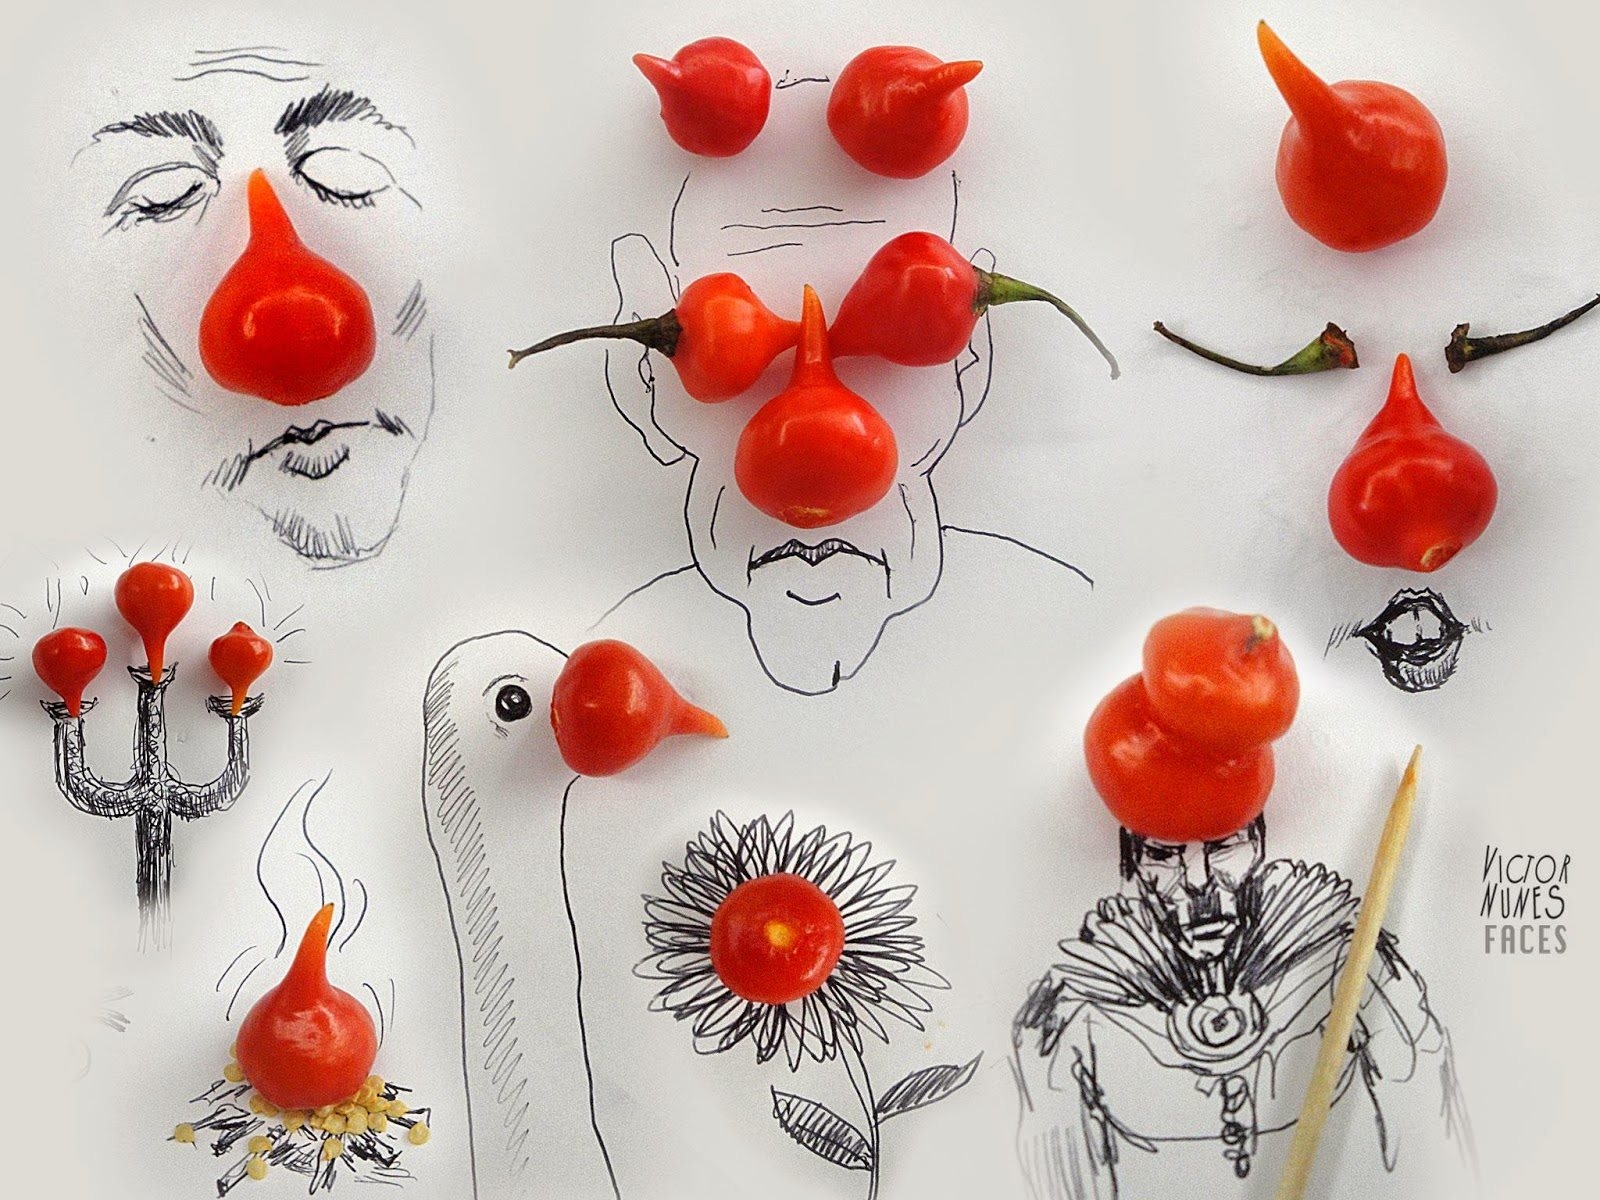 Vui nhộn những "gương mặt" được "vẽ" bằng thực phẩm